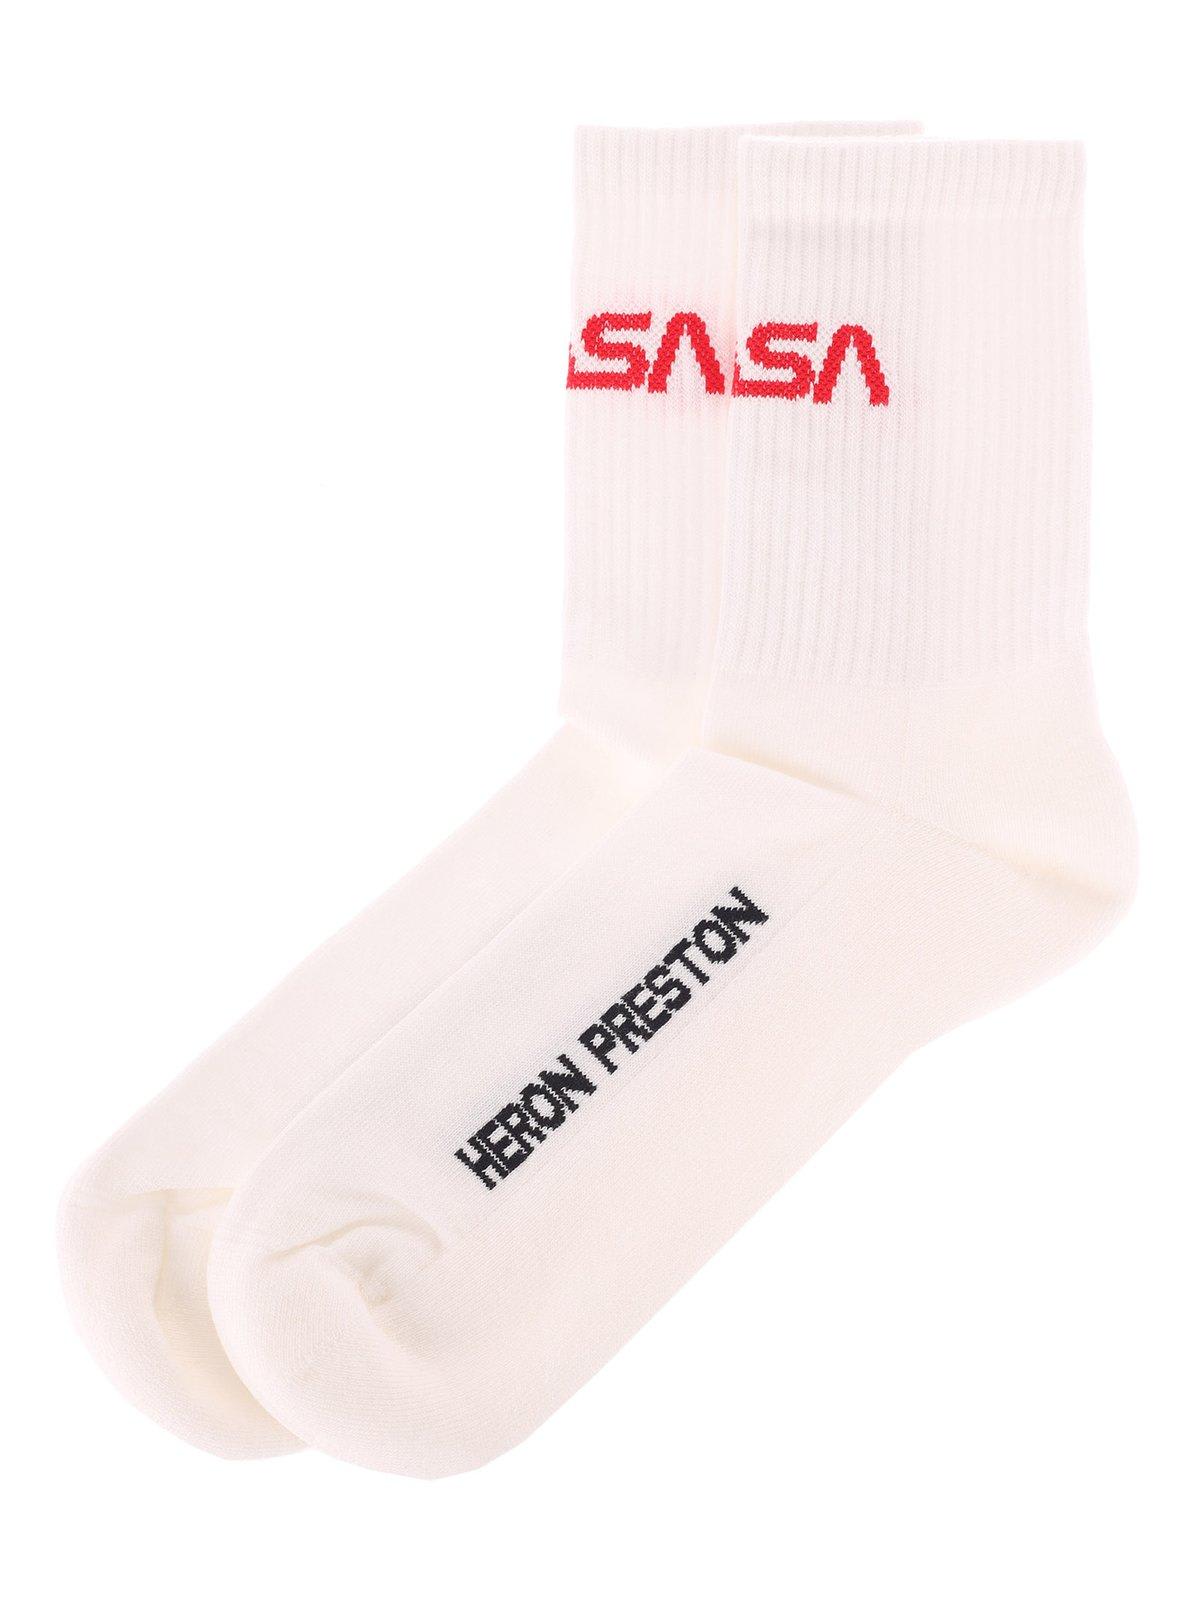 Heron Preston Logo Printed Socks In White